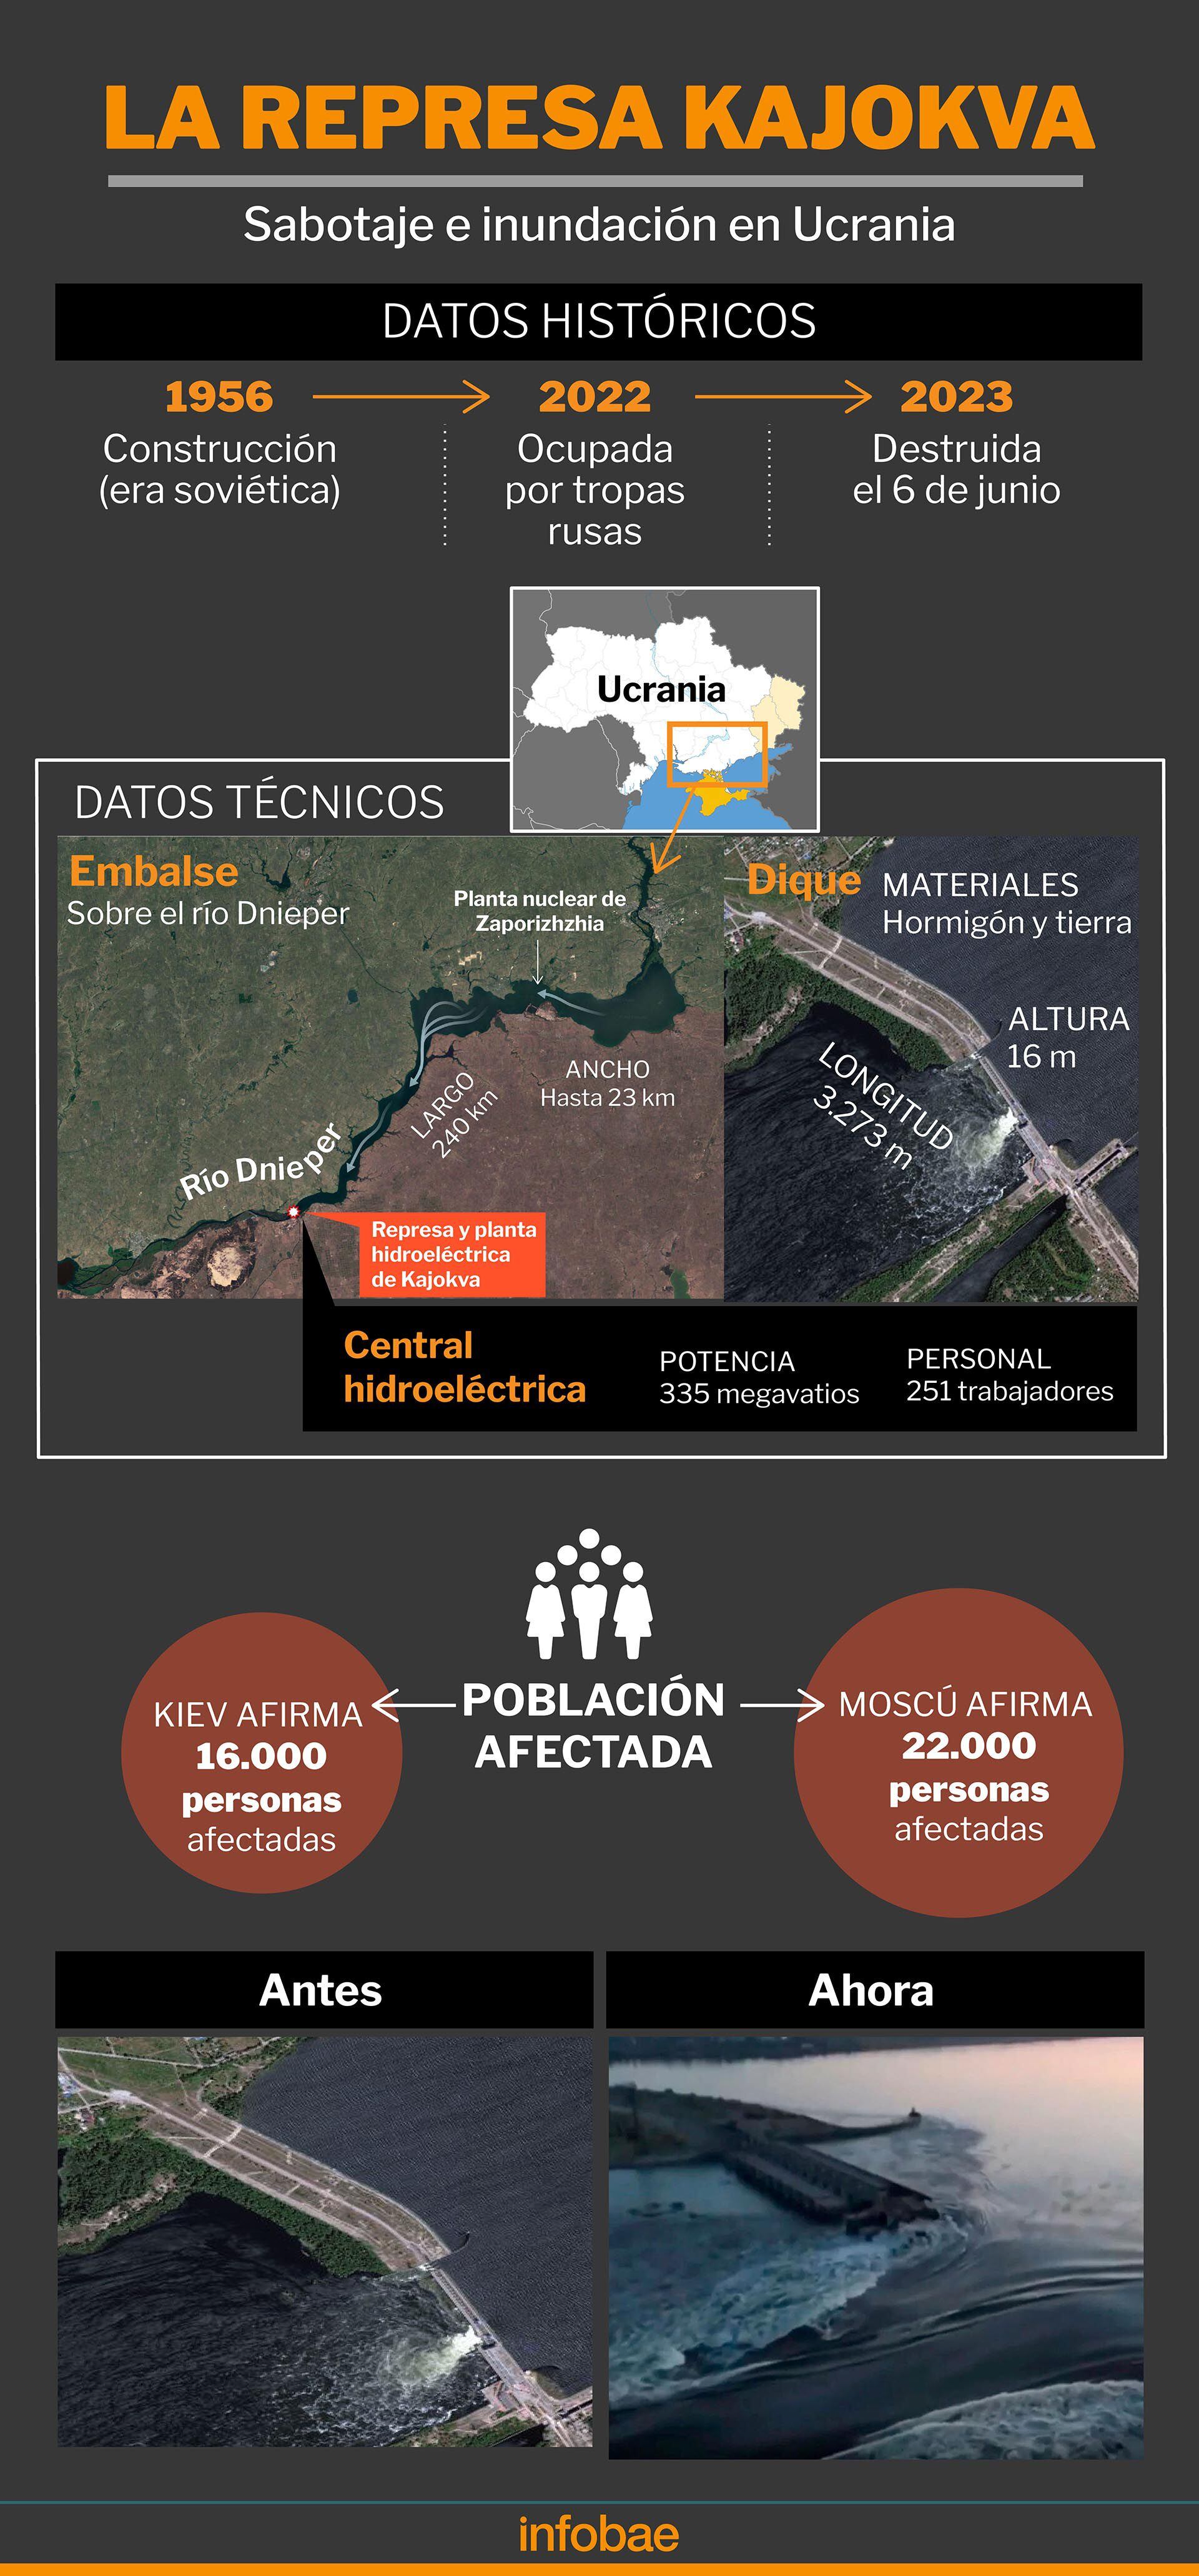 Sabotaje Represa kajokva inundación ucrania infografia